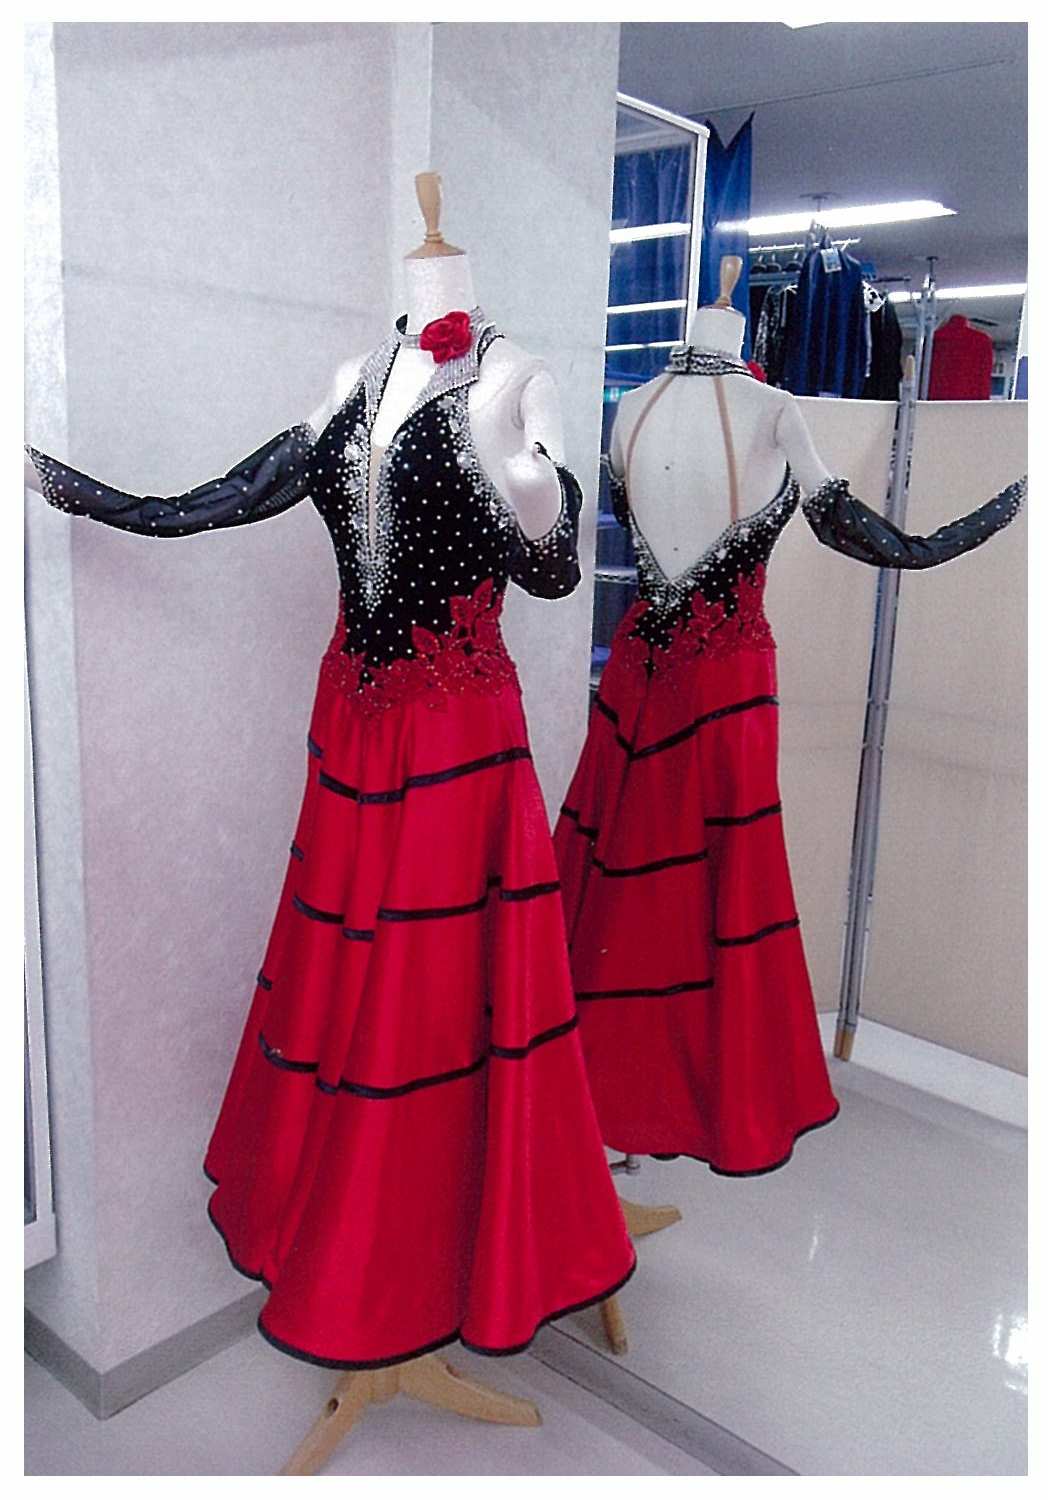 パソドブレドレスとパソドブレスカート - 白樺ドレス スタッフブログ